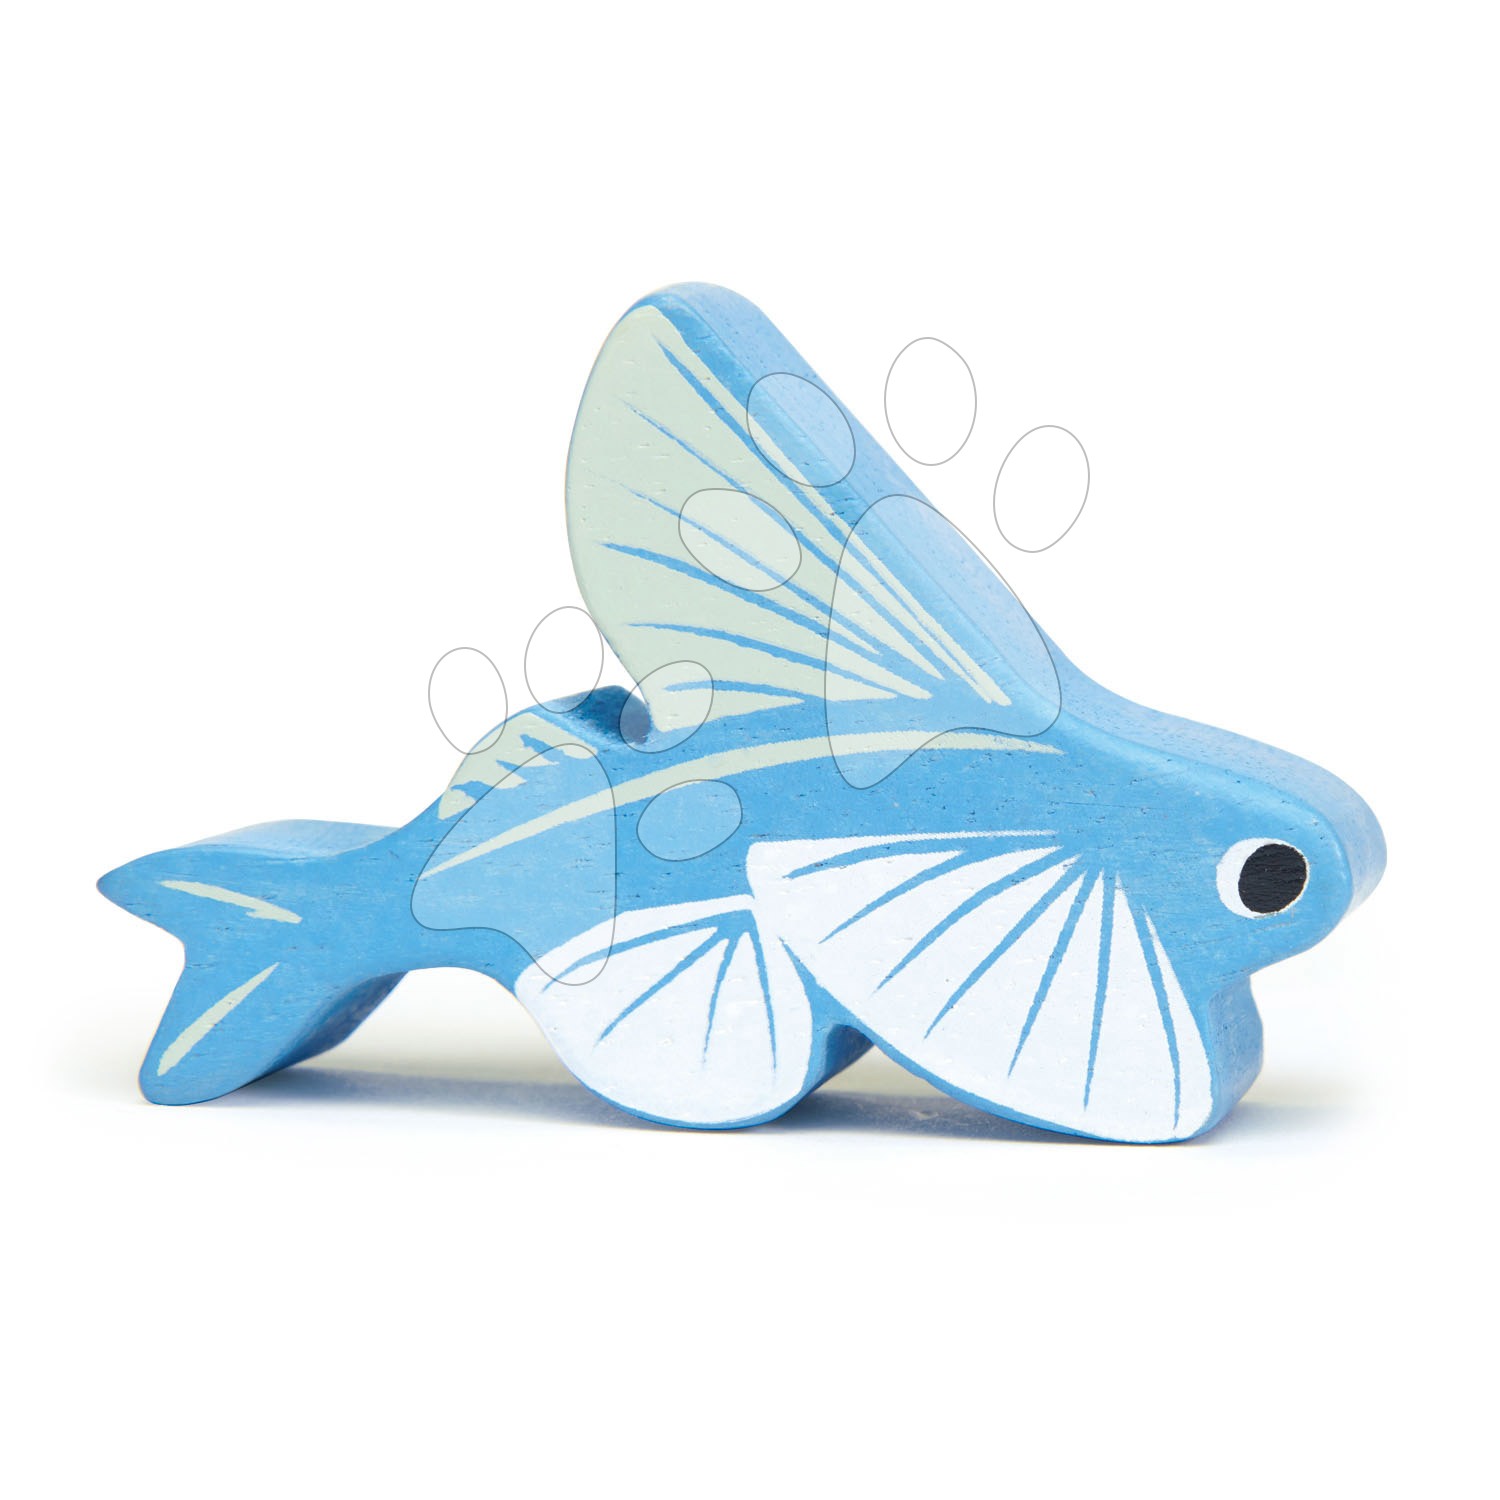 Drevená lietajúca ryba Flying fish Tender Leaf Toys 